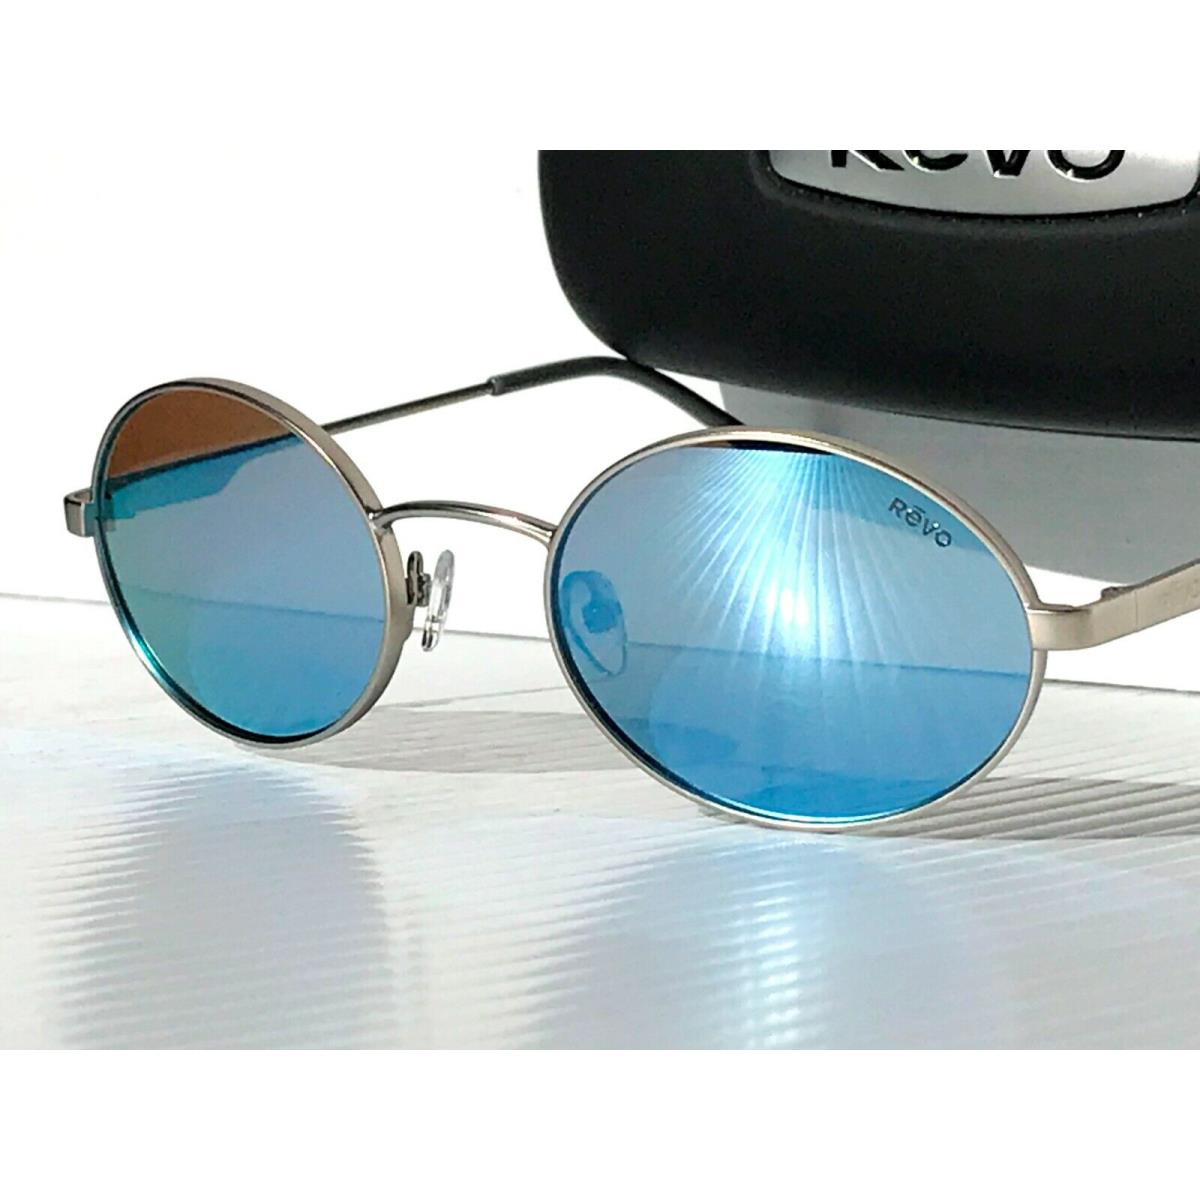 Revo sunglasses LUNAR - Silver Frame, Blue Lens